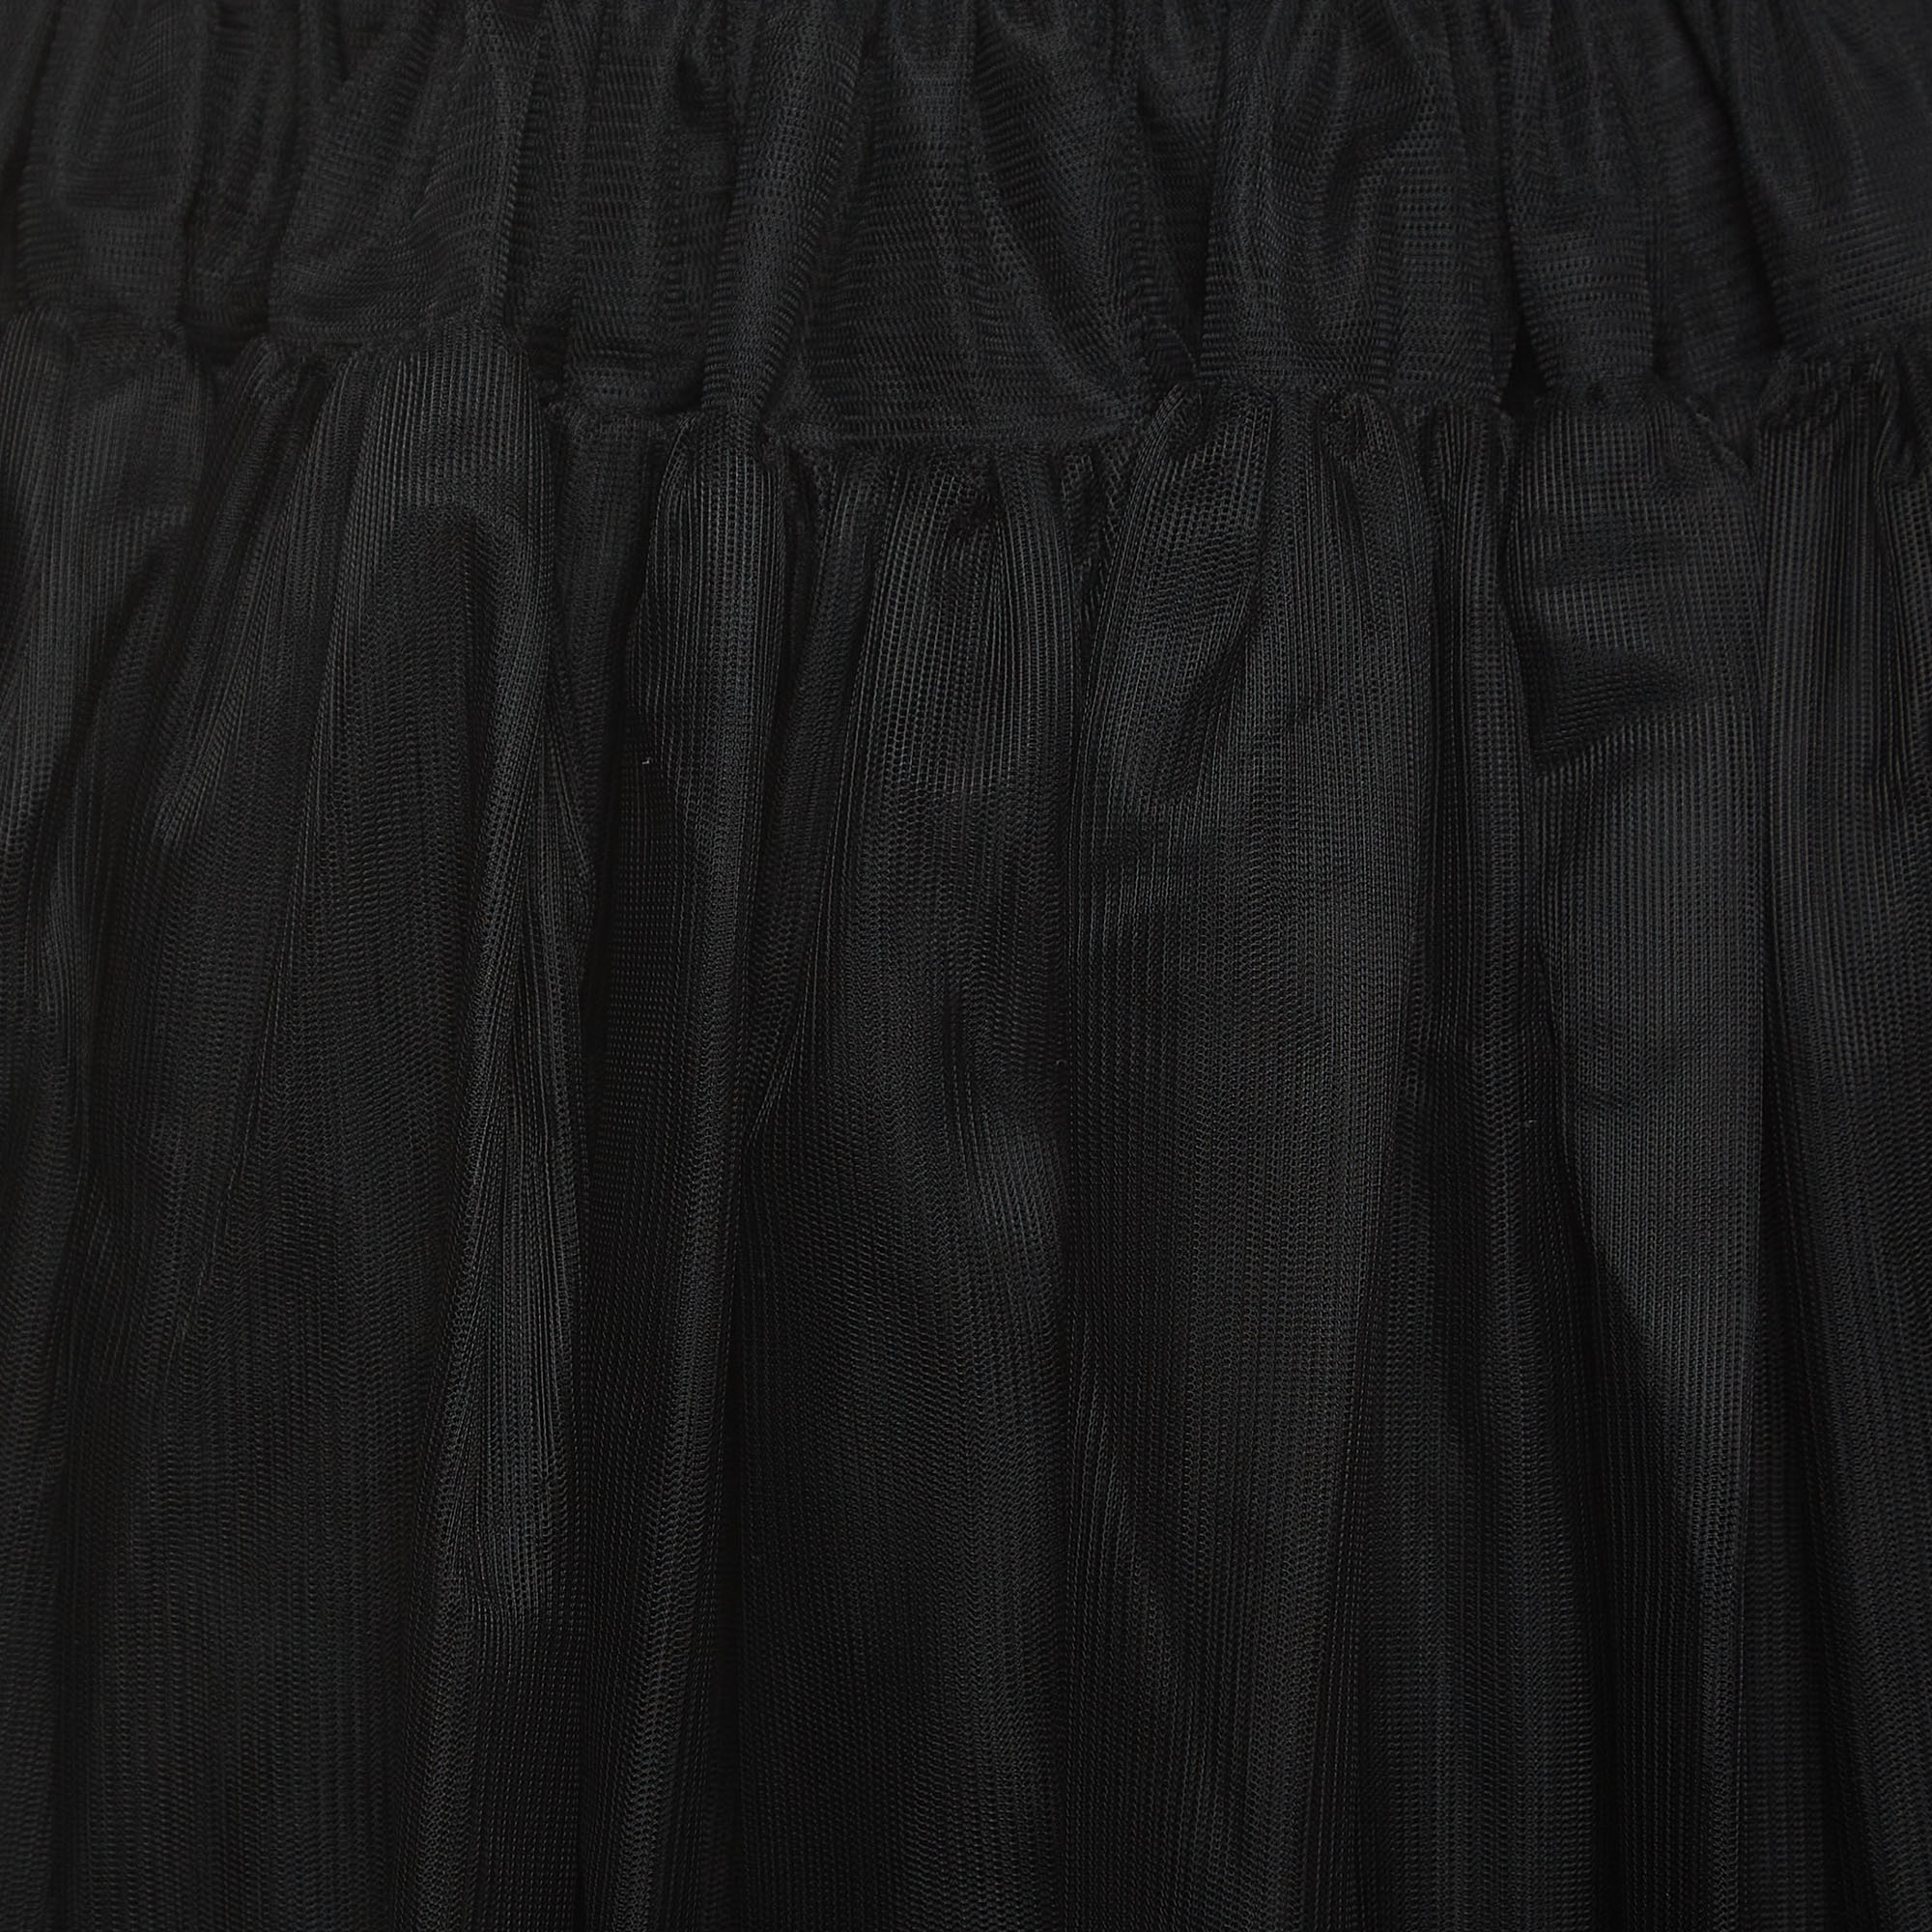 Dolce & Gabbana Black Tulle Skirt (11-12 Yrs)